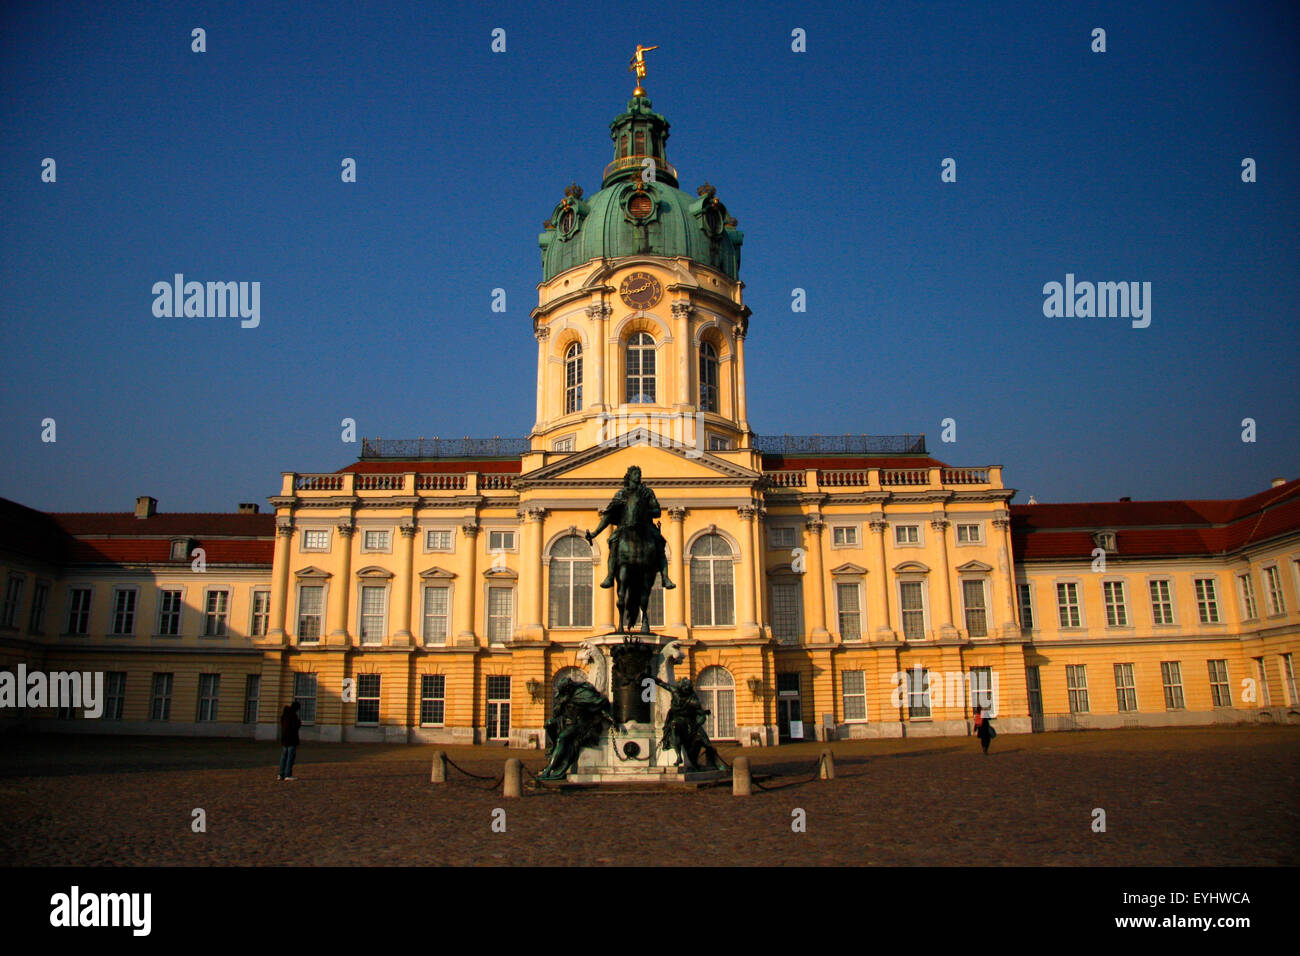 Schloss Charlottenburg, Berlin-Charlottenburg. Stock Photo